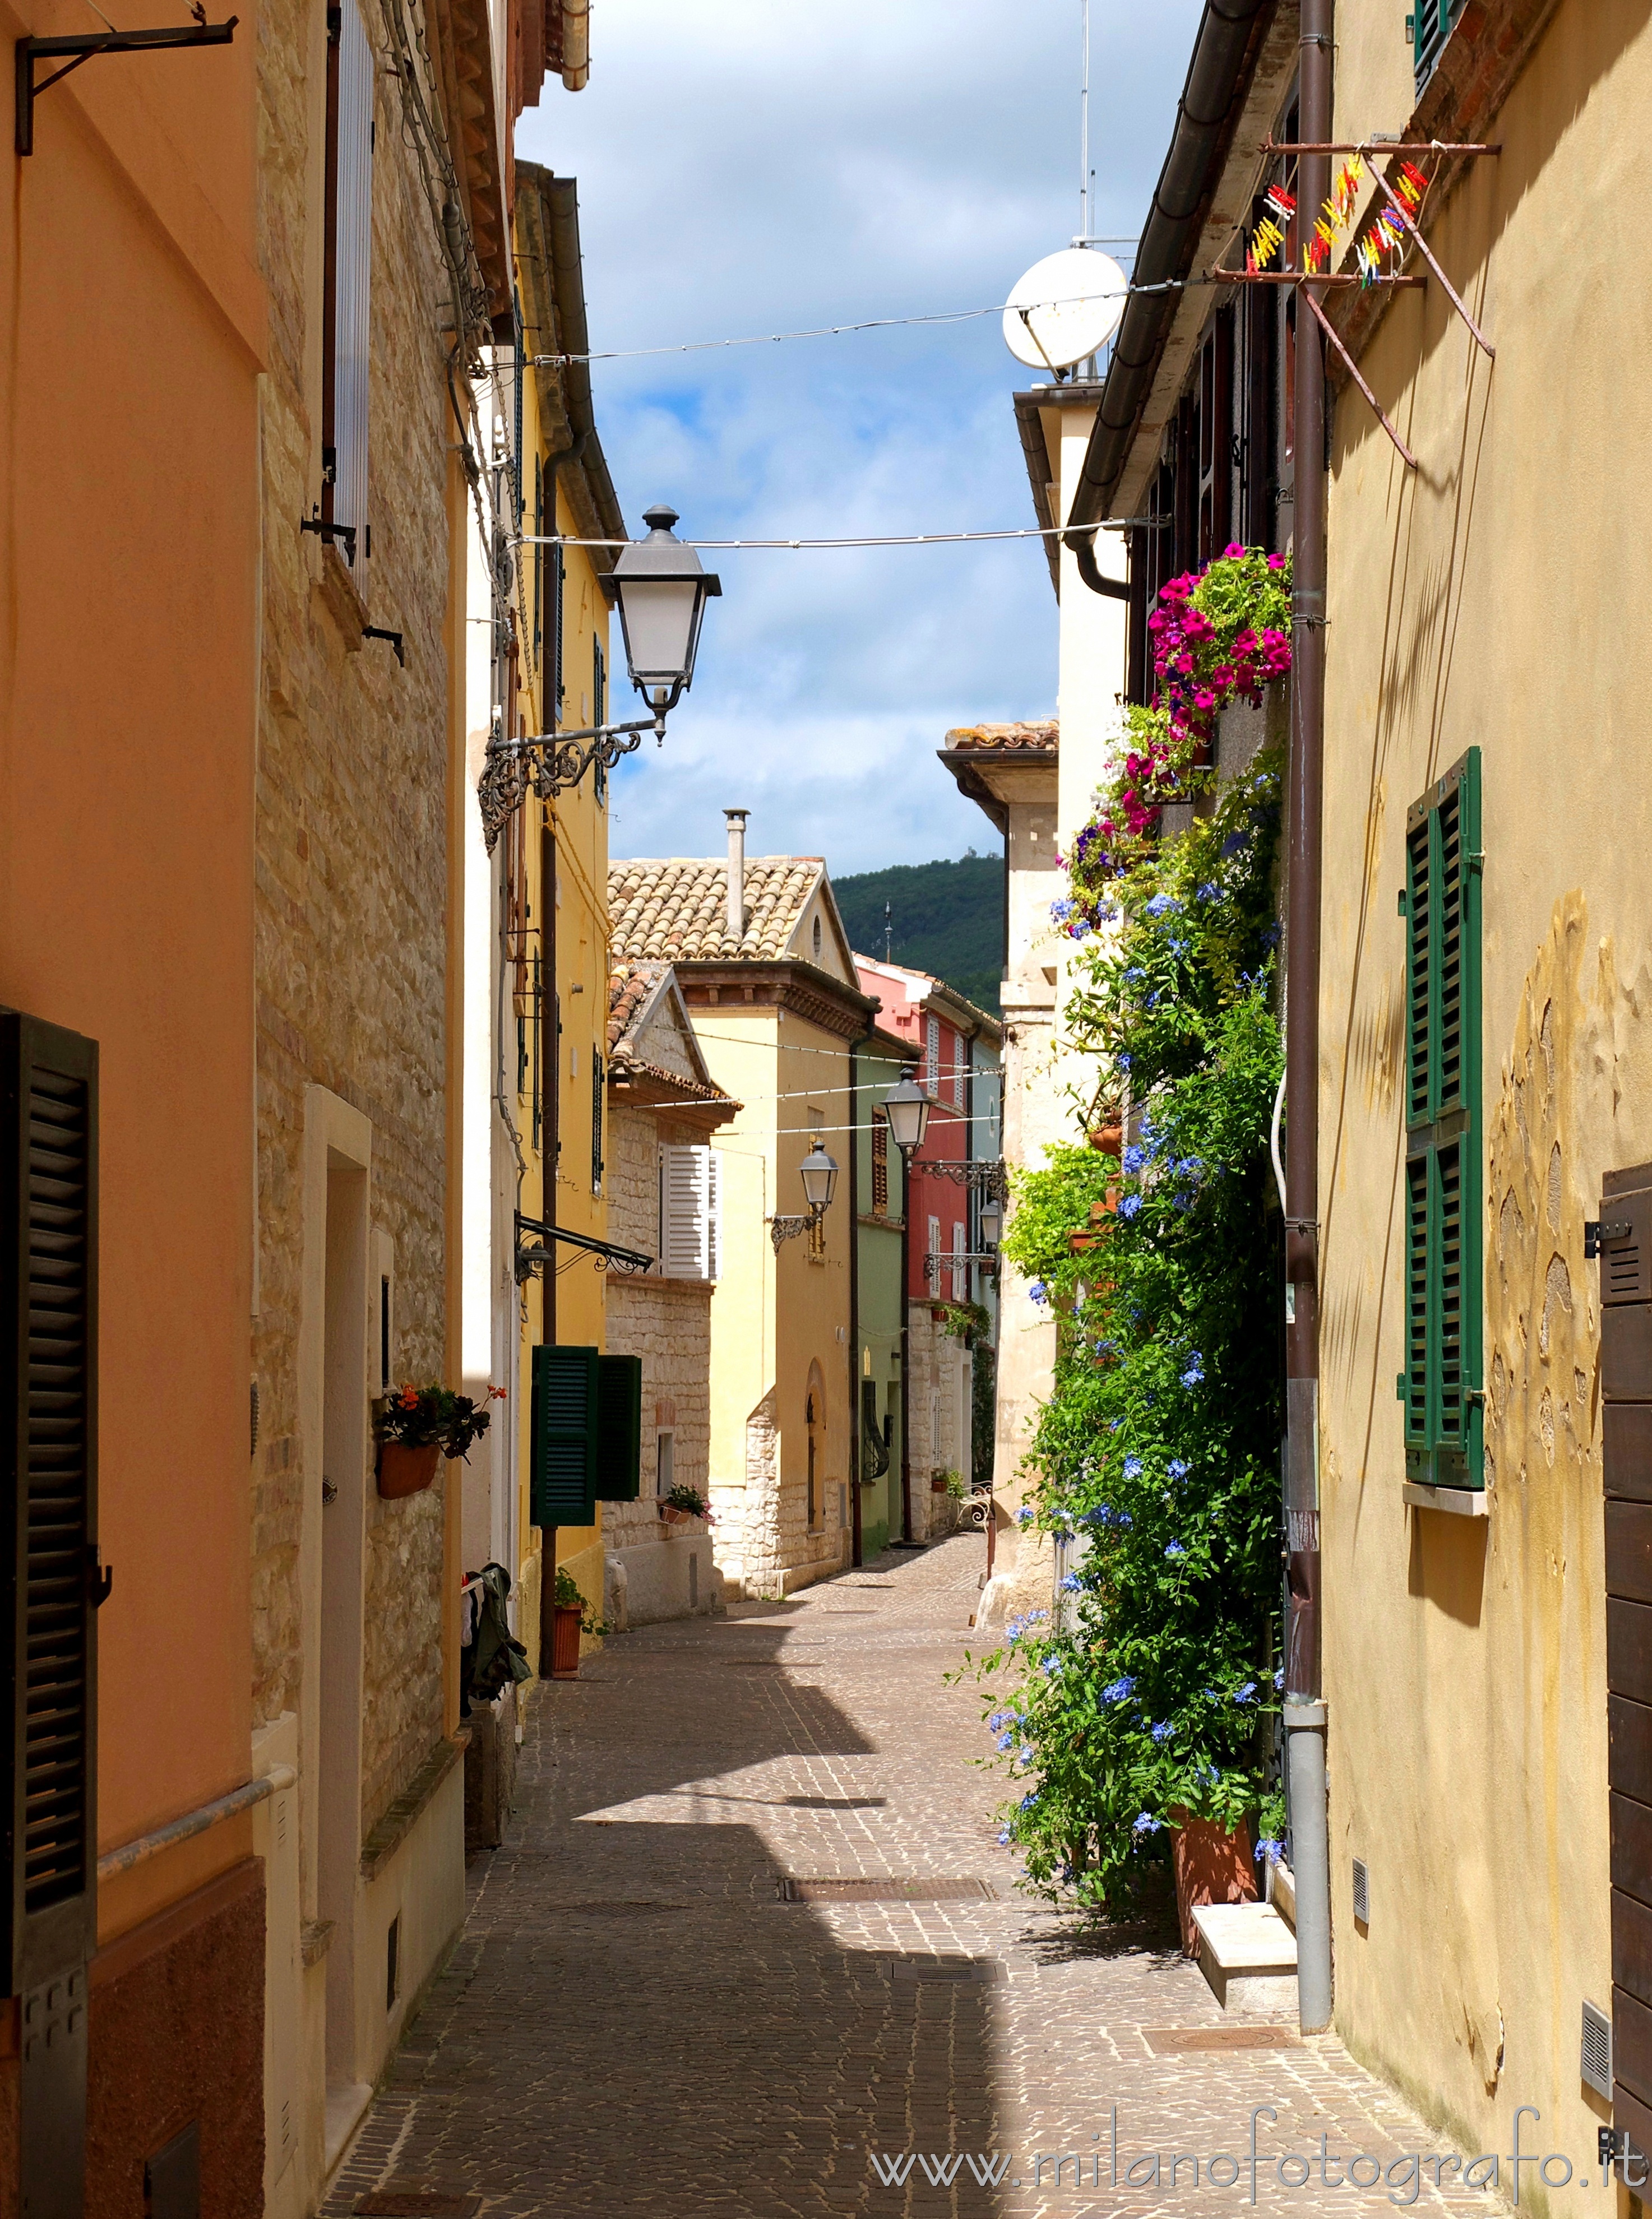 Sirolo (Ancona, Italy): Narrow street - Sirolo (Ancona, Italy)